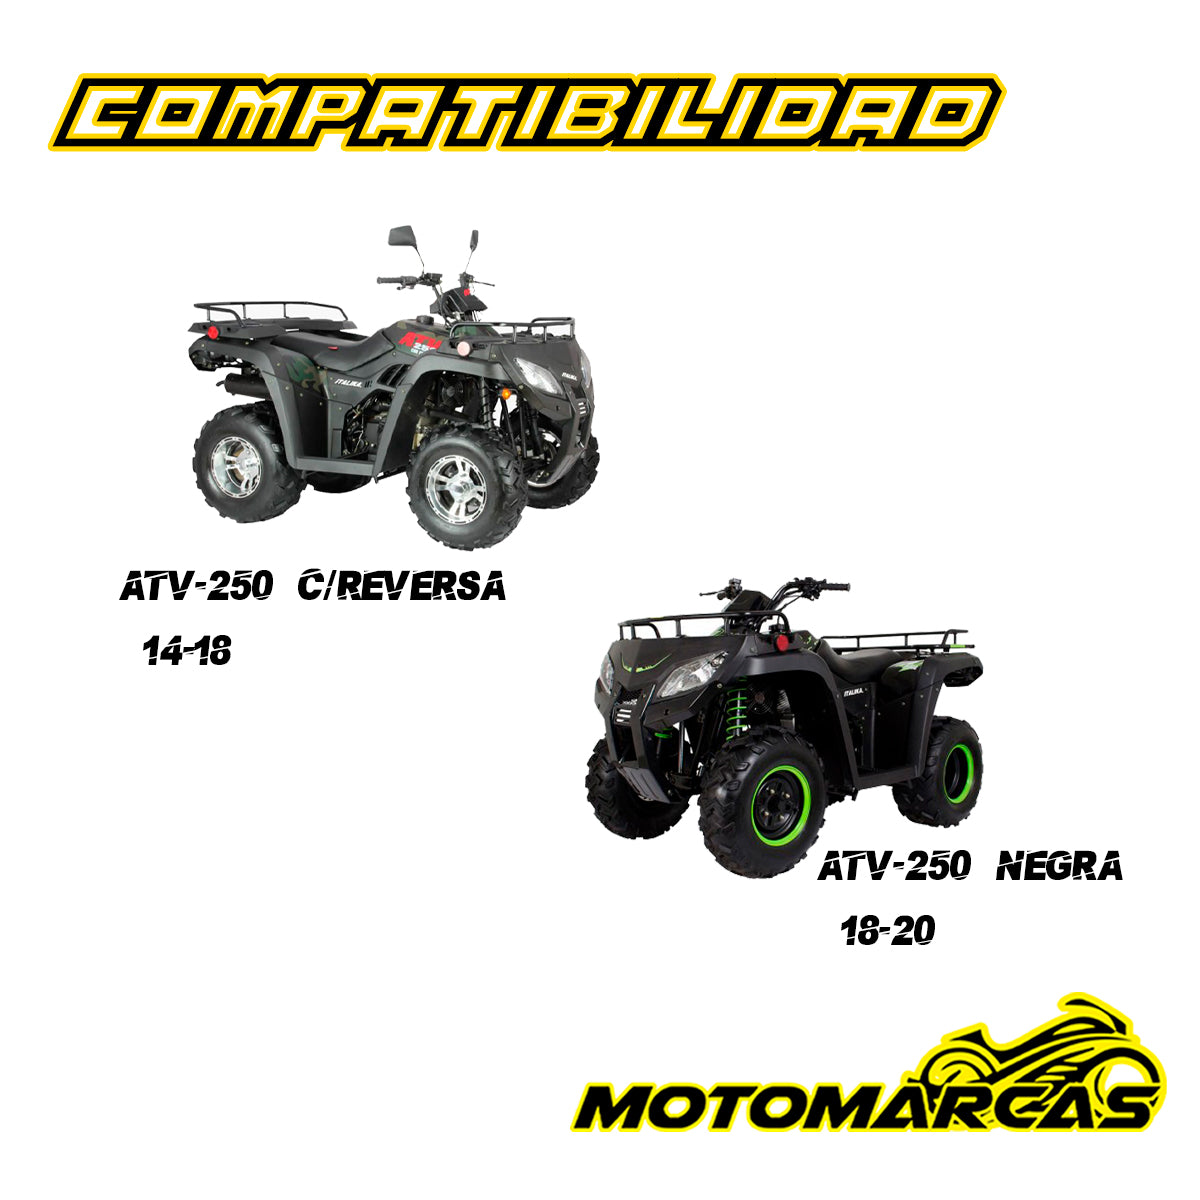 HORQUILLA DELANTERA IZQUIERDA PARA MOTOCICLETA ATV-250 CON REVERSA AÑOS  14-18 COMPATIBILIDAD  ATV-250 NEGRA AÑOS  18-20